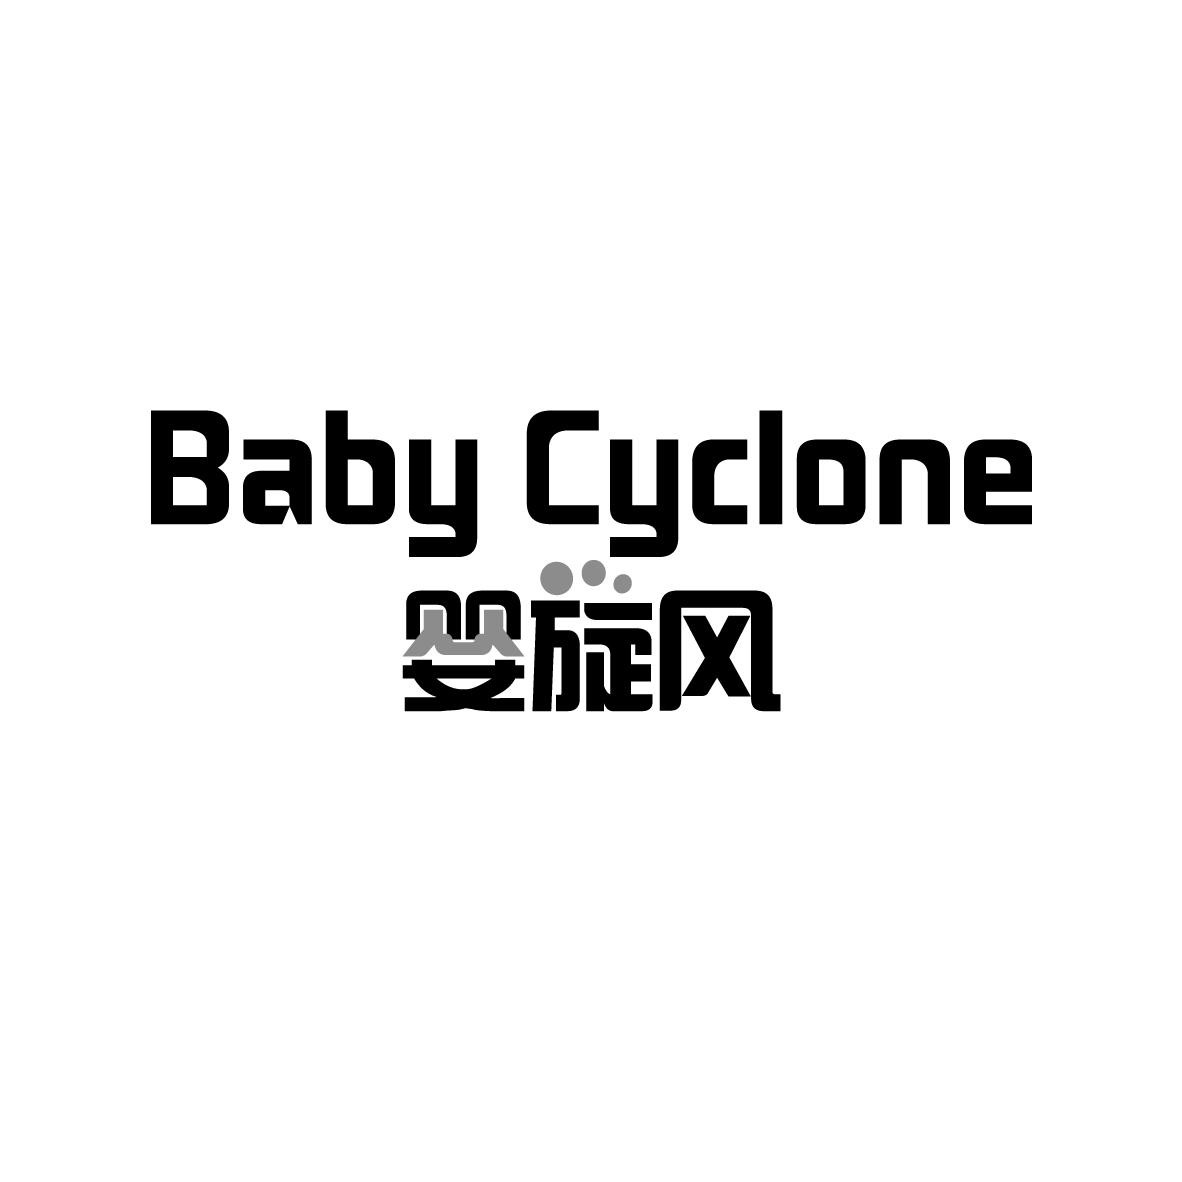 婴旋风
BABY CYCLONE